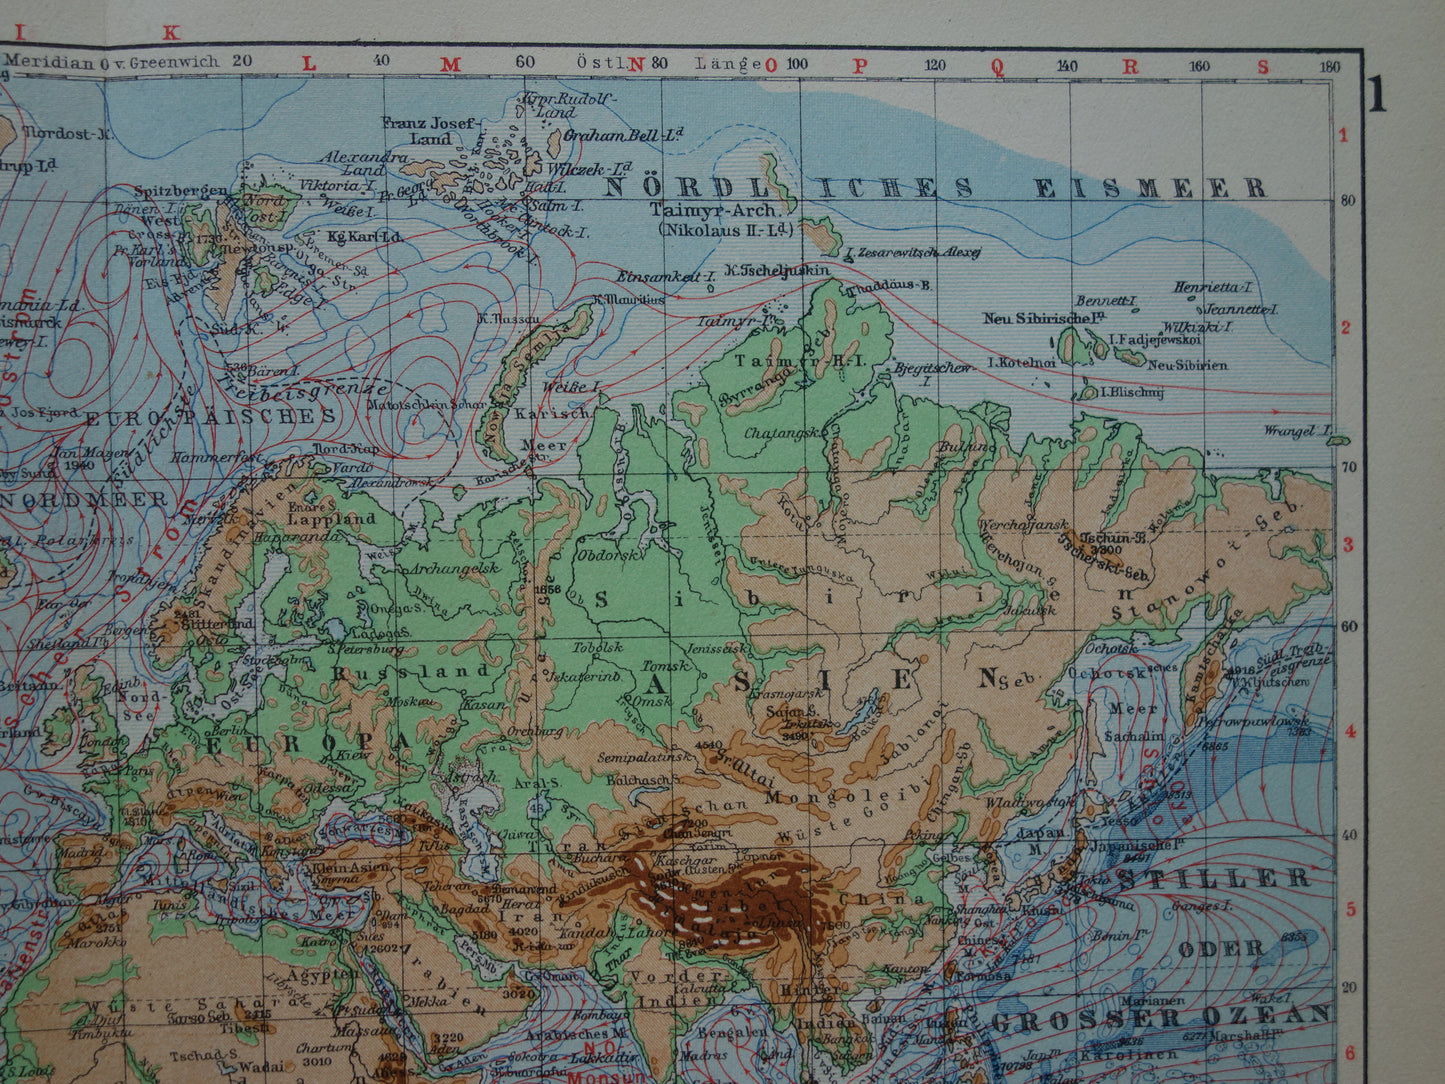 Oude WERELDKAART uit 1928 originele vintage kaart van de wereld - hoogtekaart met zeestromingen